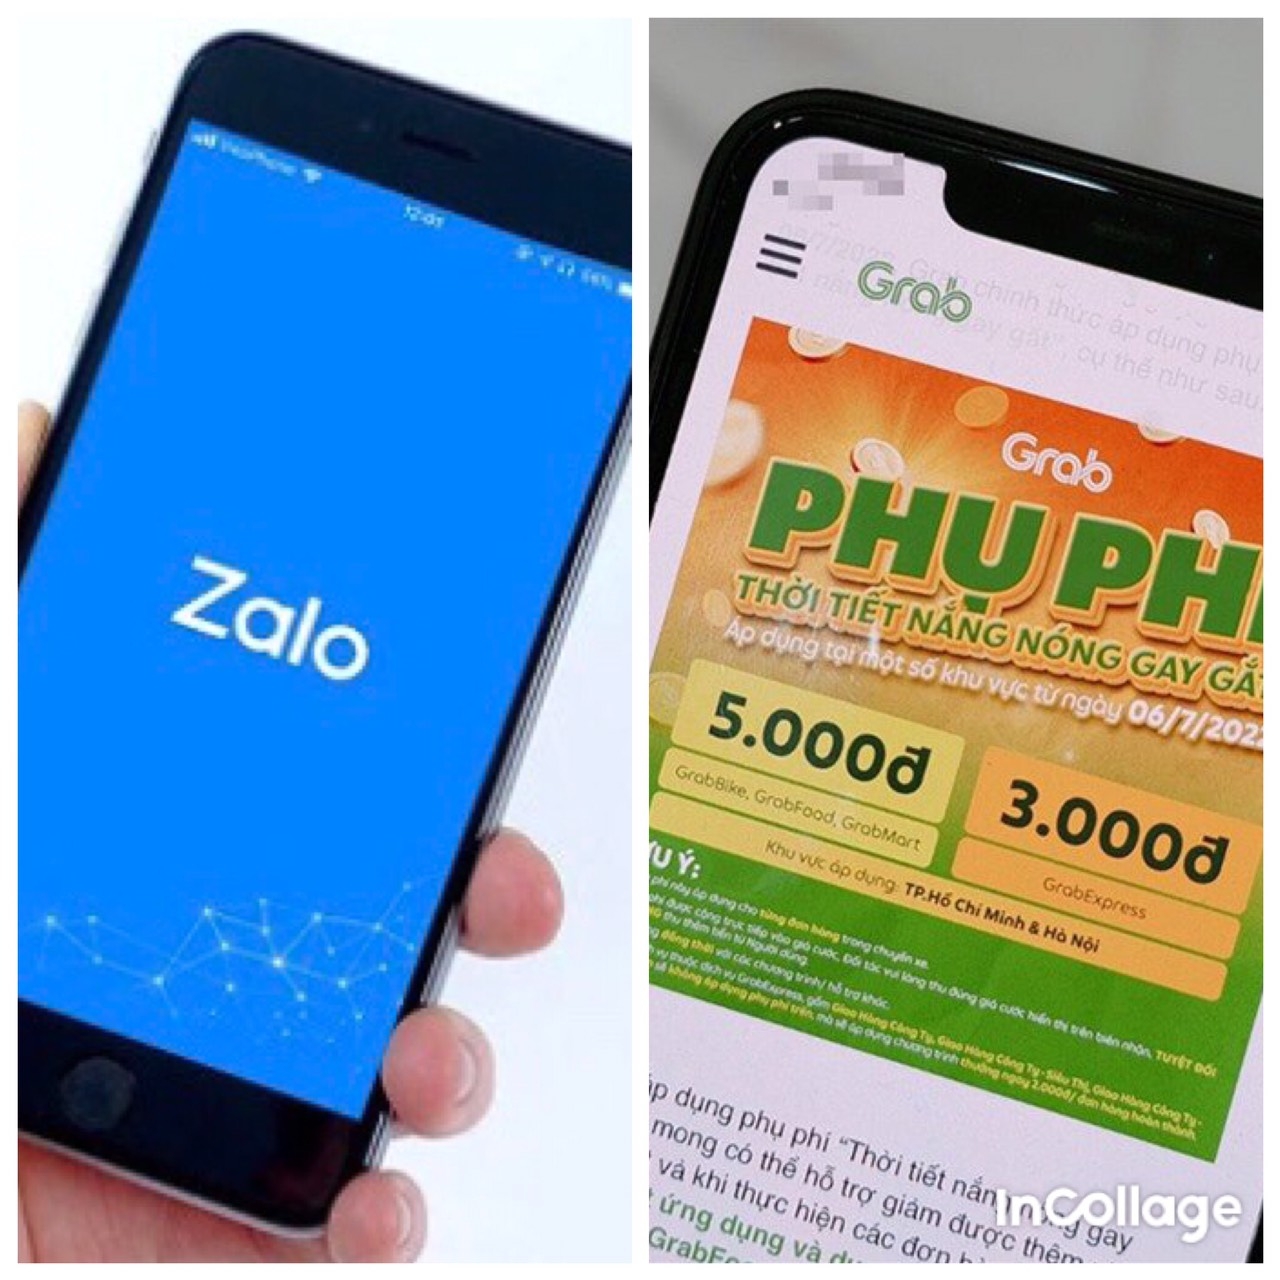 Zalo thu phí, Grab phụ phí và quyền của người tiêu dùng